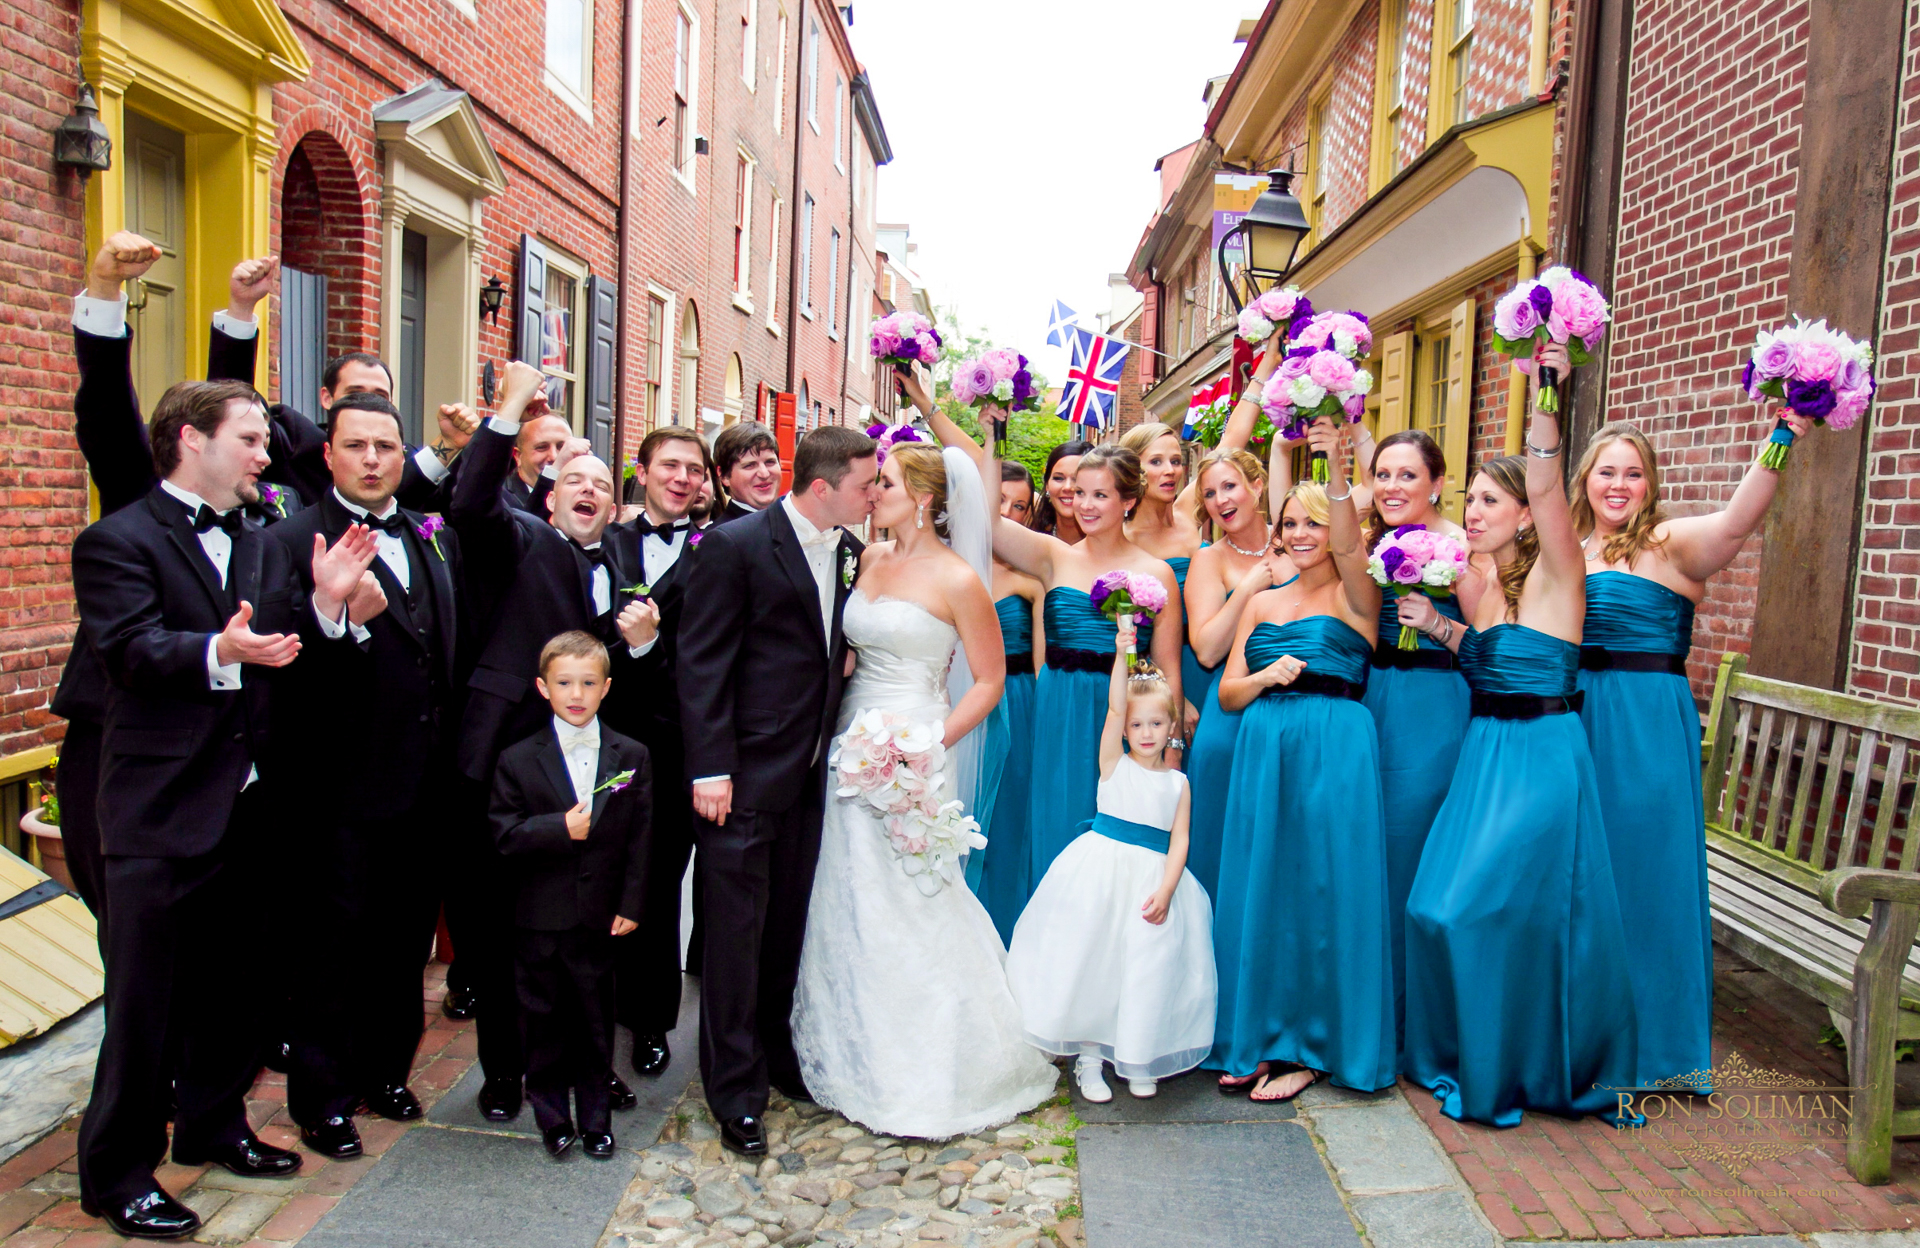 Elfreth's Alley Wedding photos